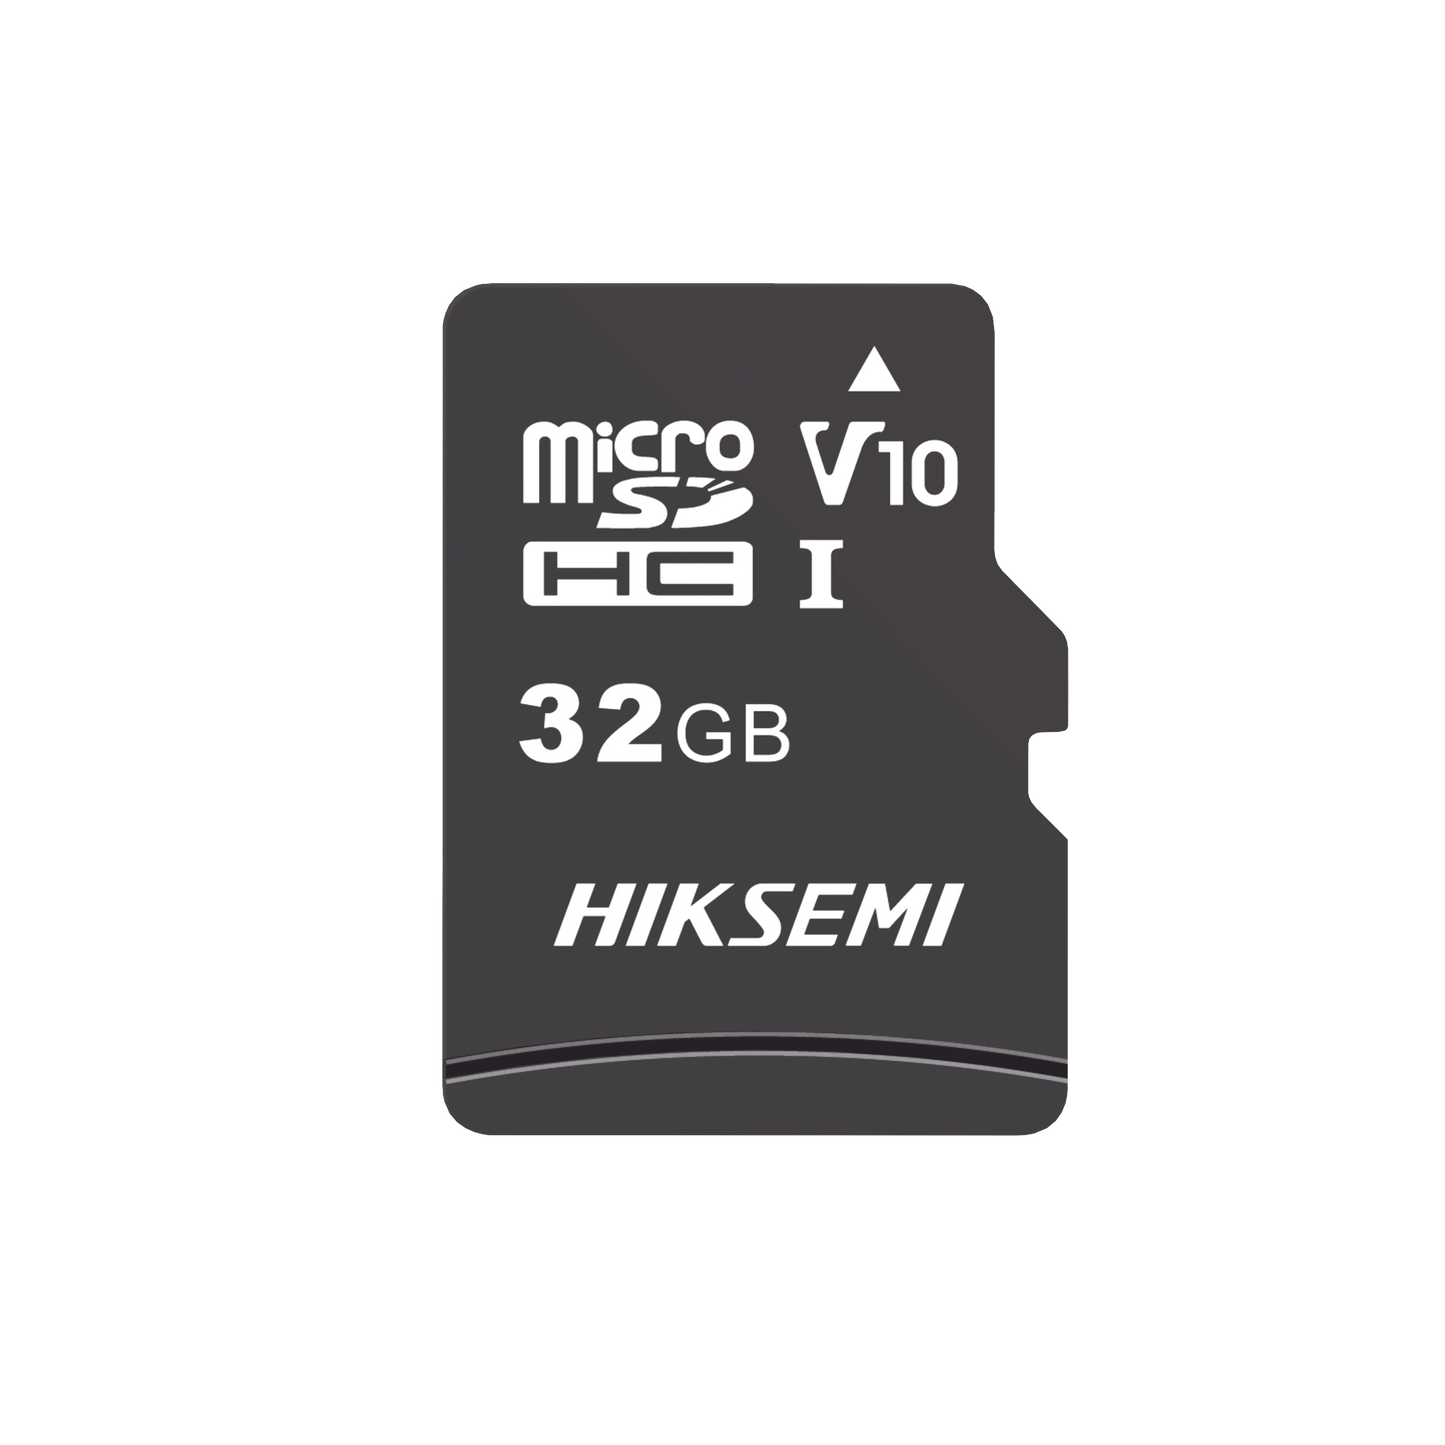 Memoria microSD para Celular o Tablet / 32 GB / Multipropósito / Clase 10 / 92 MB/s Lectura / 50 MB/s Escritura